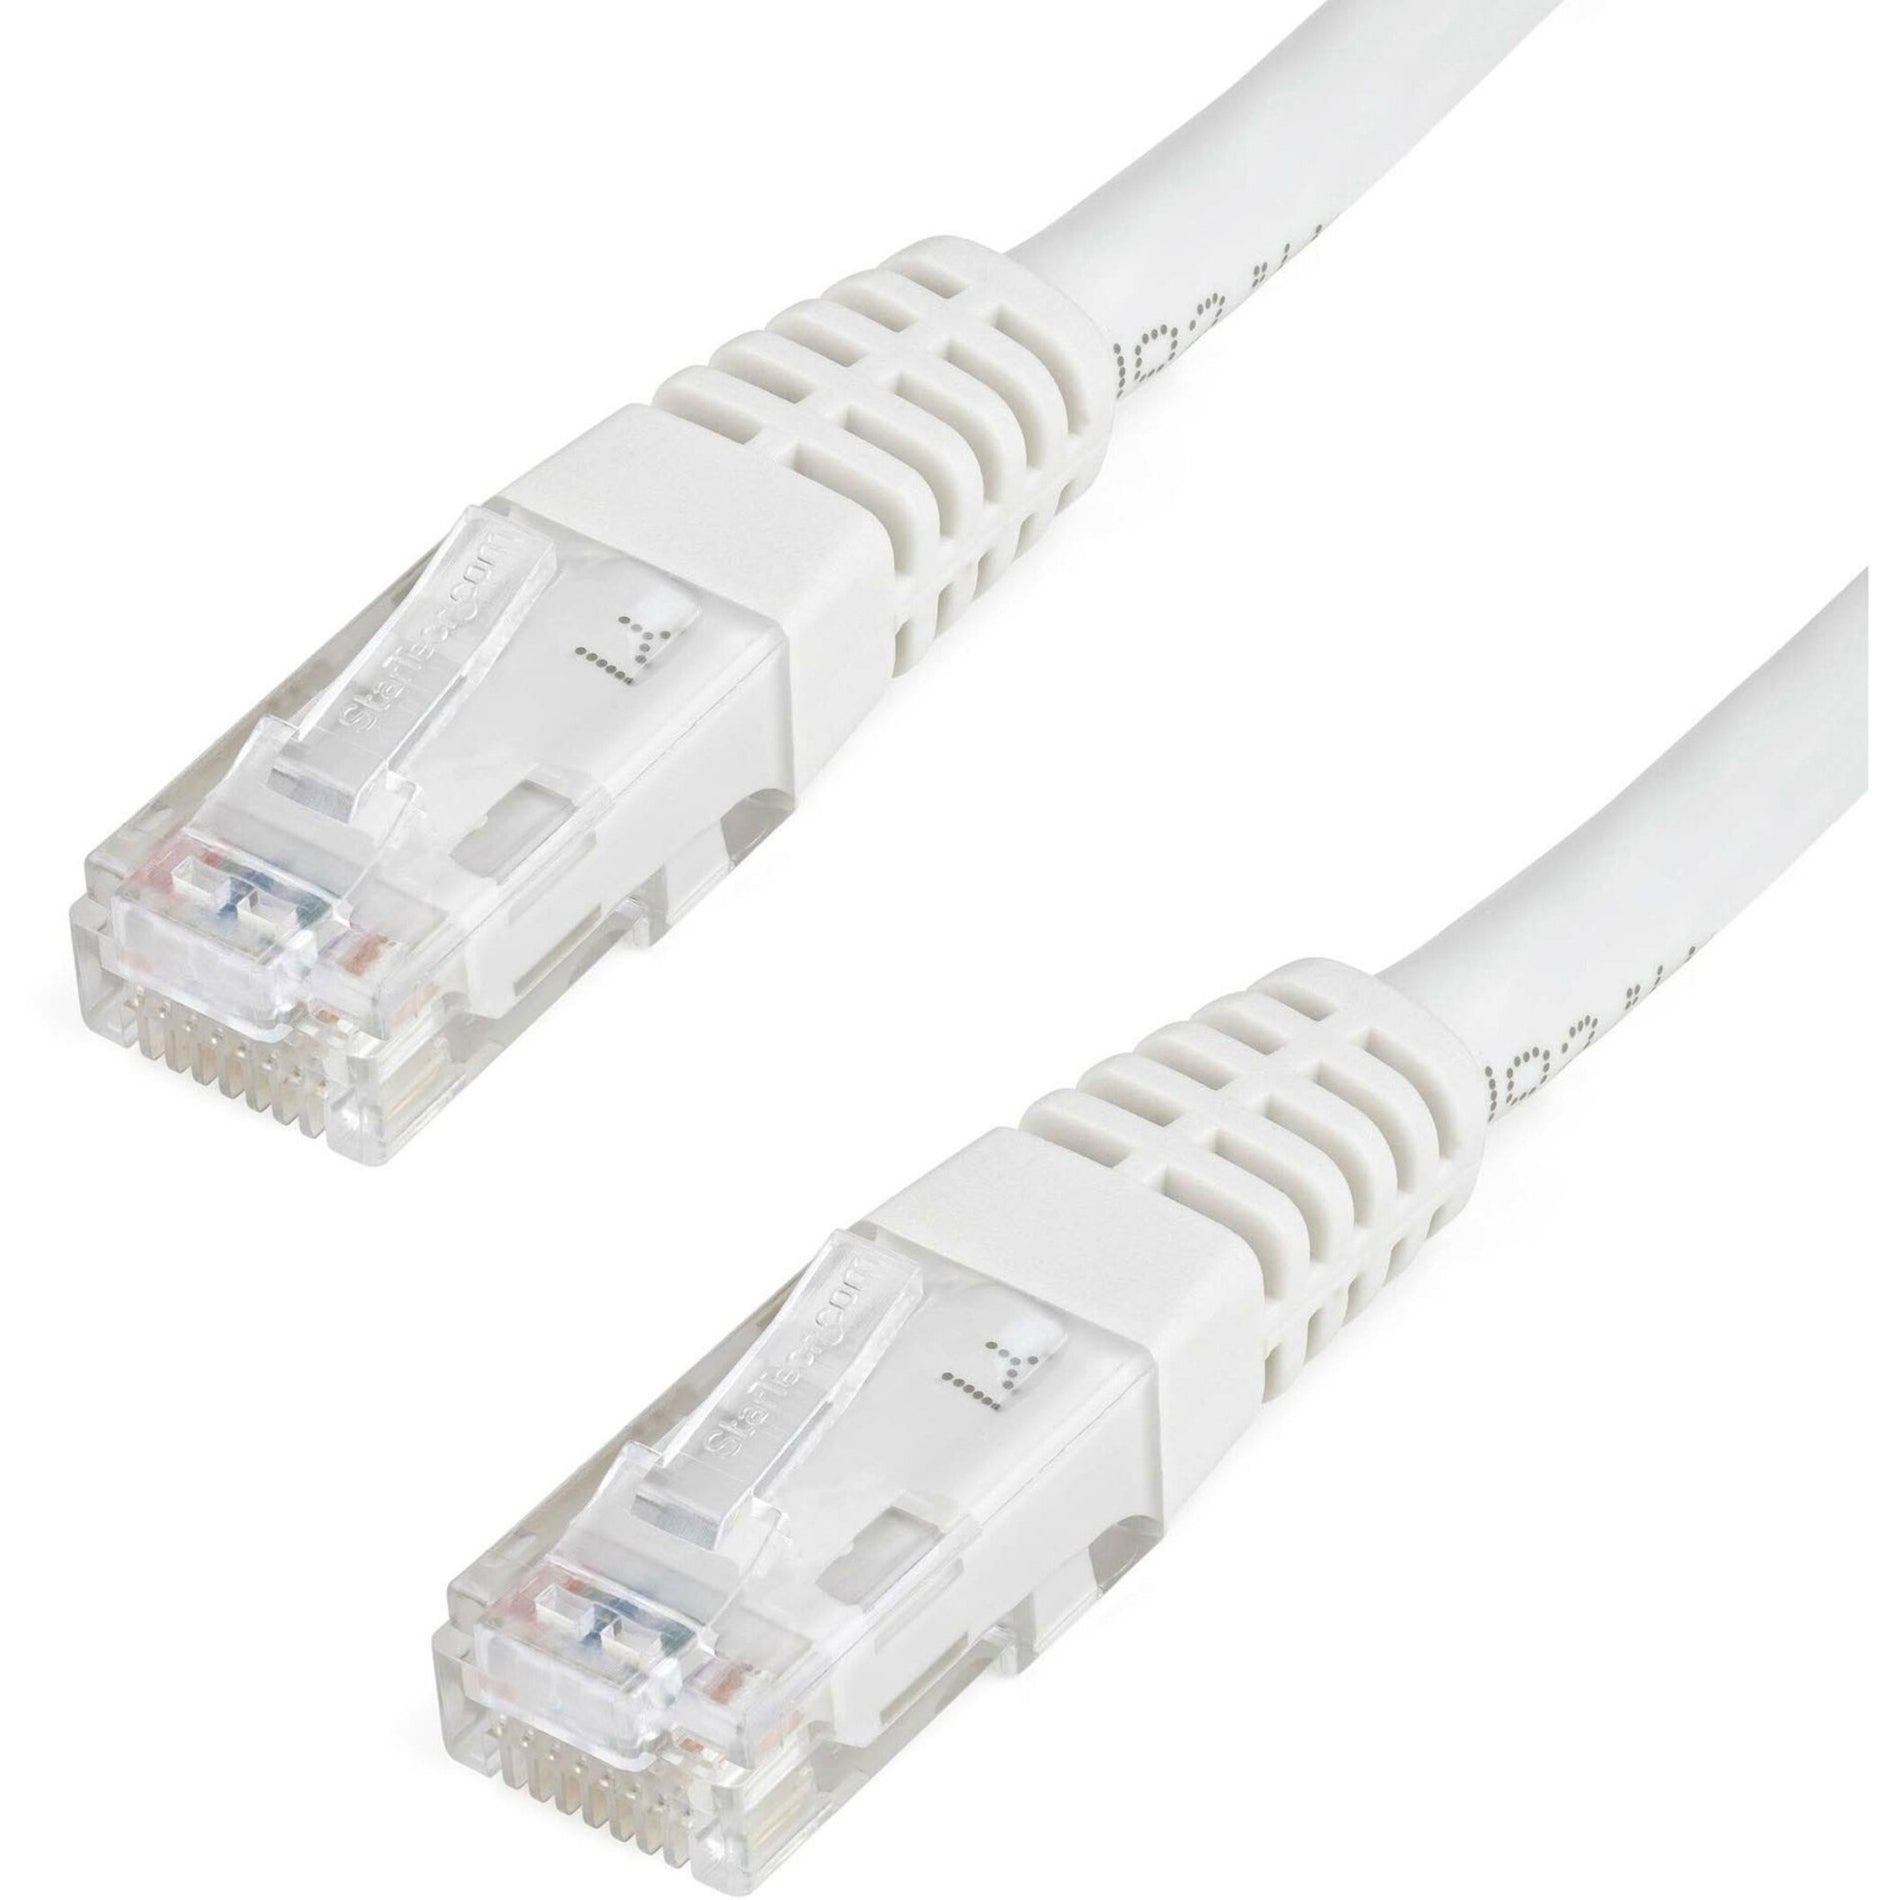 StarTech.com C6PATCH6WH 6ft White Cat6 UTP Patch Cable ETL Verified 10 Gbit/s Data Transfer Rate PoE++ Compatible  StarTech.com Câble de raccordement Cat6 UTP blanc de 6 pi C6PATCH6WH vérifié ETL débit de transfert de données de 10 Gbit/s compatible PoE++